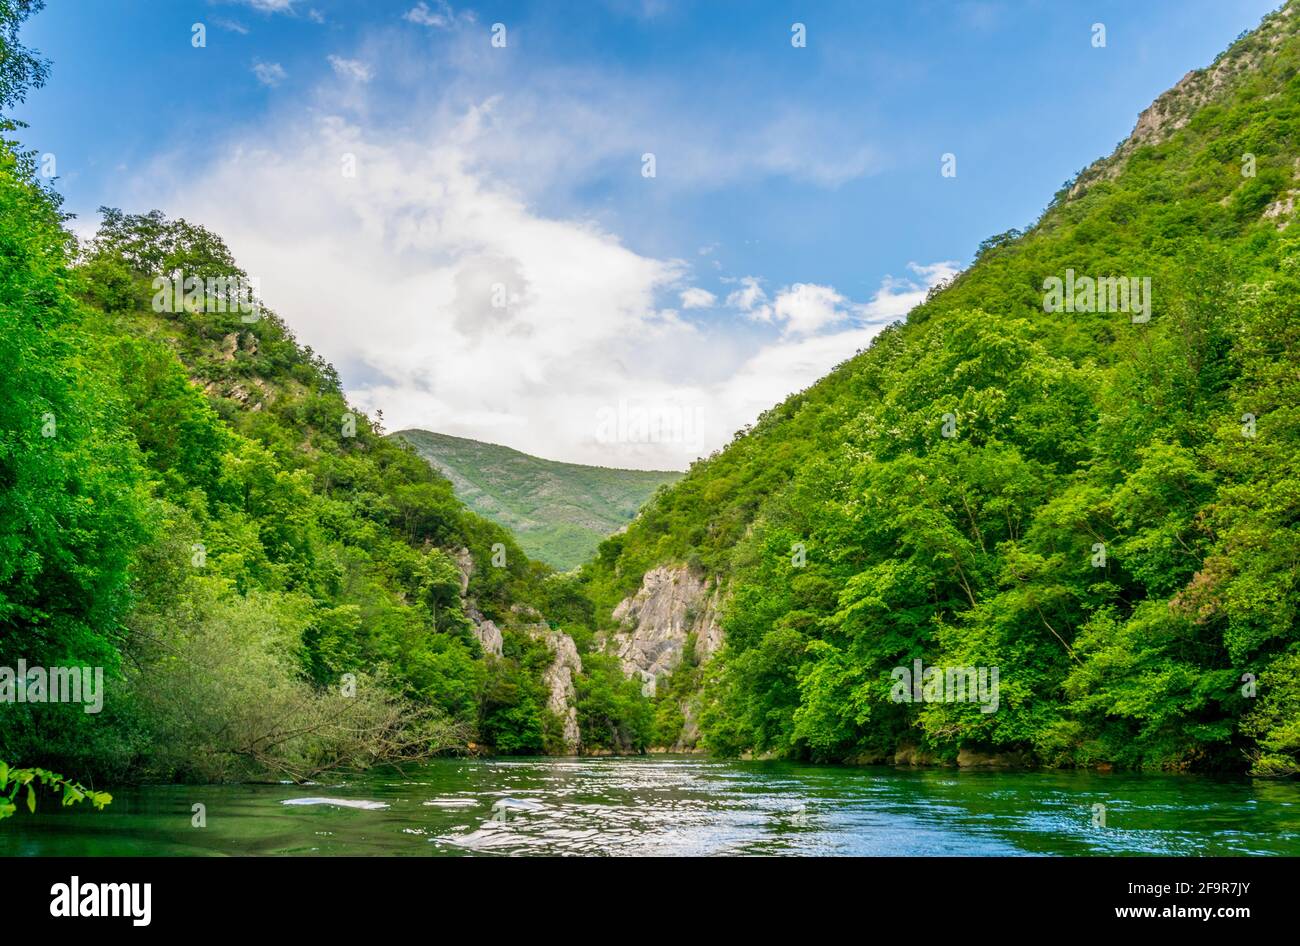 Matka-Schlucht in mazedonien bei skopje Stockfotografie - Alamy